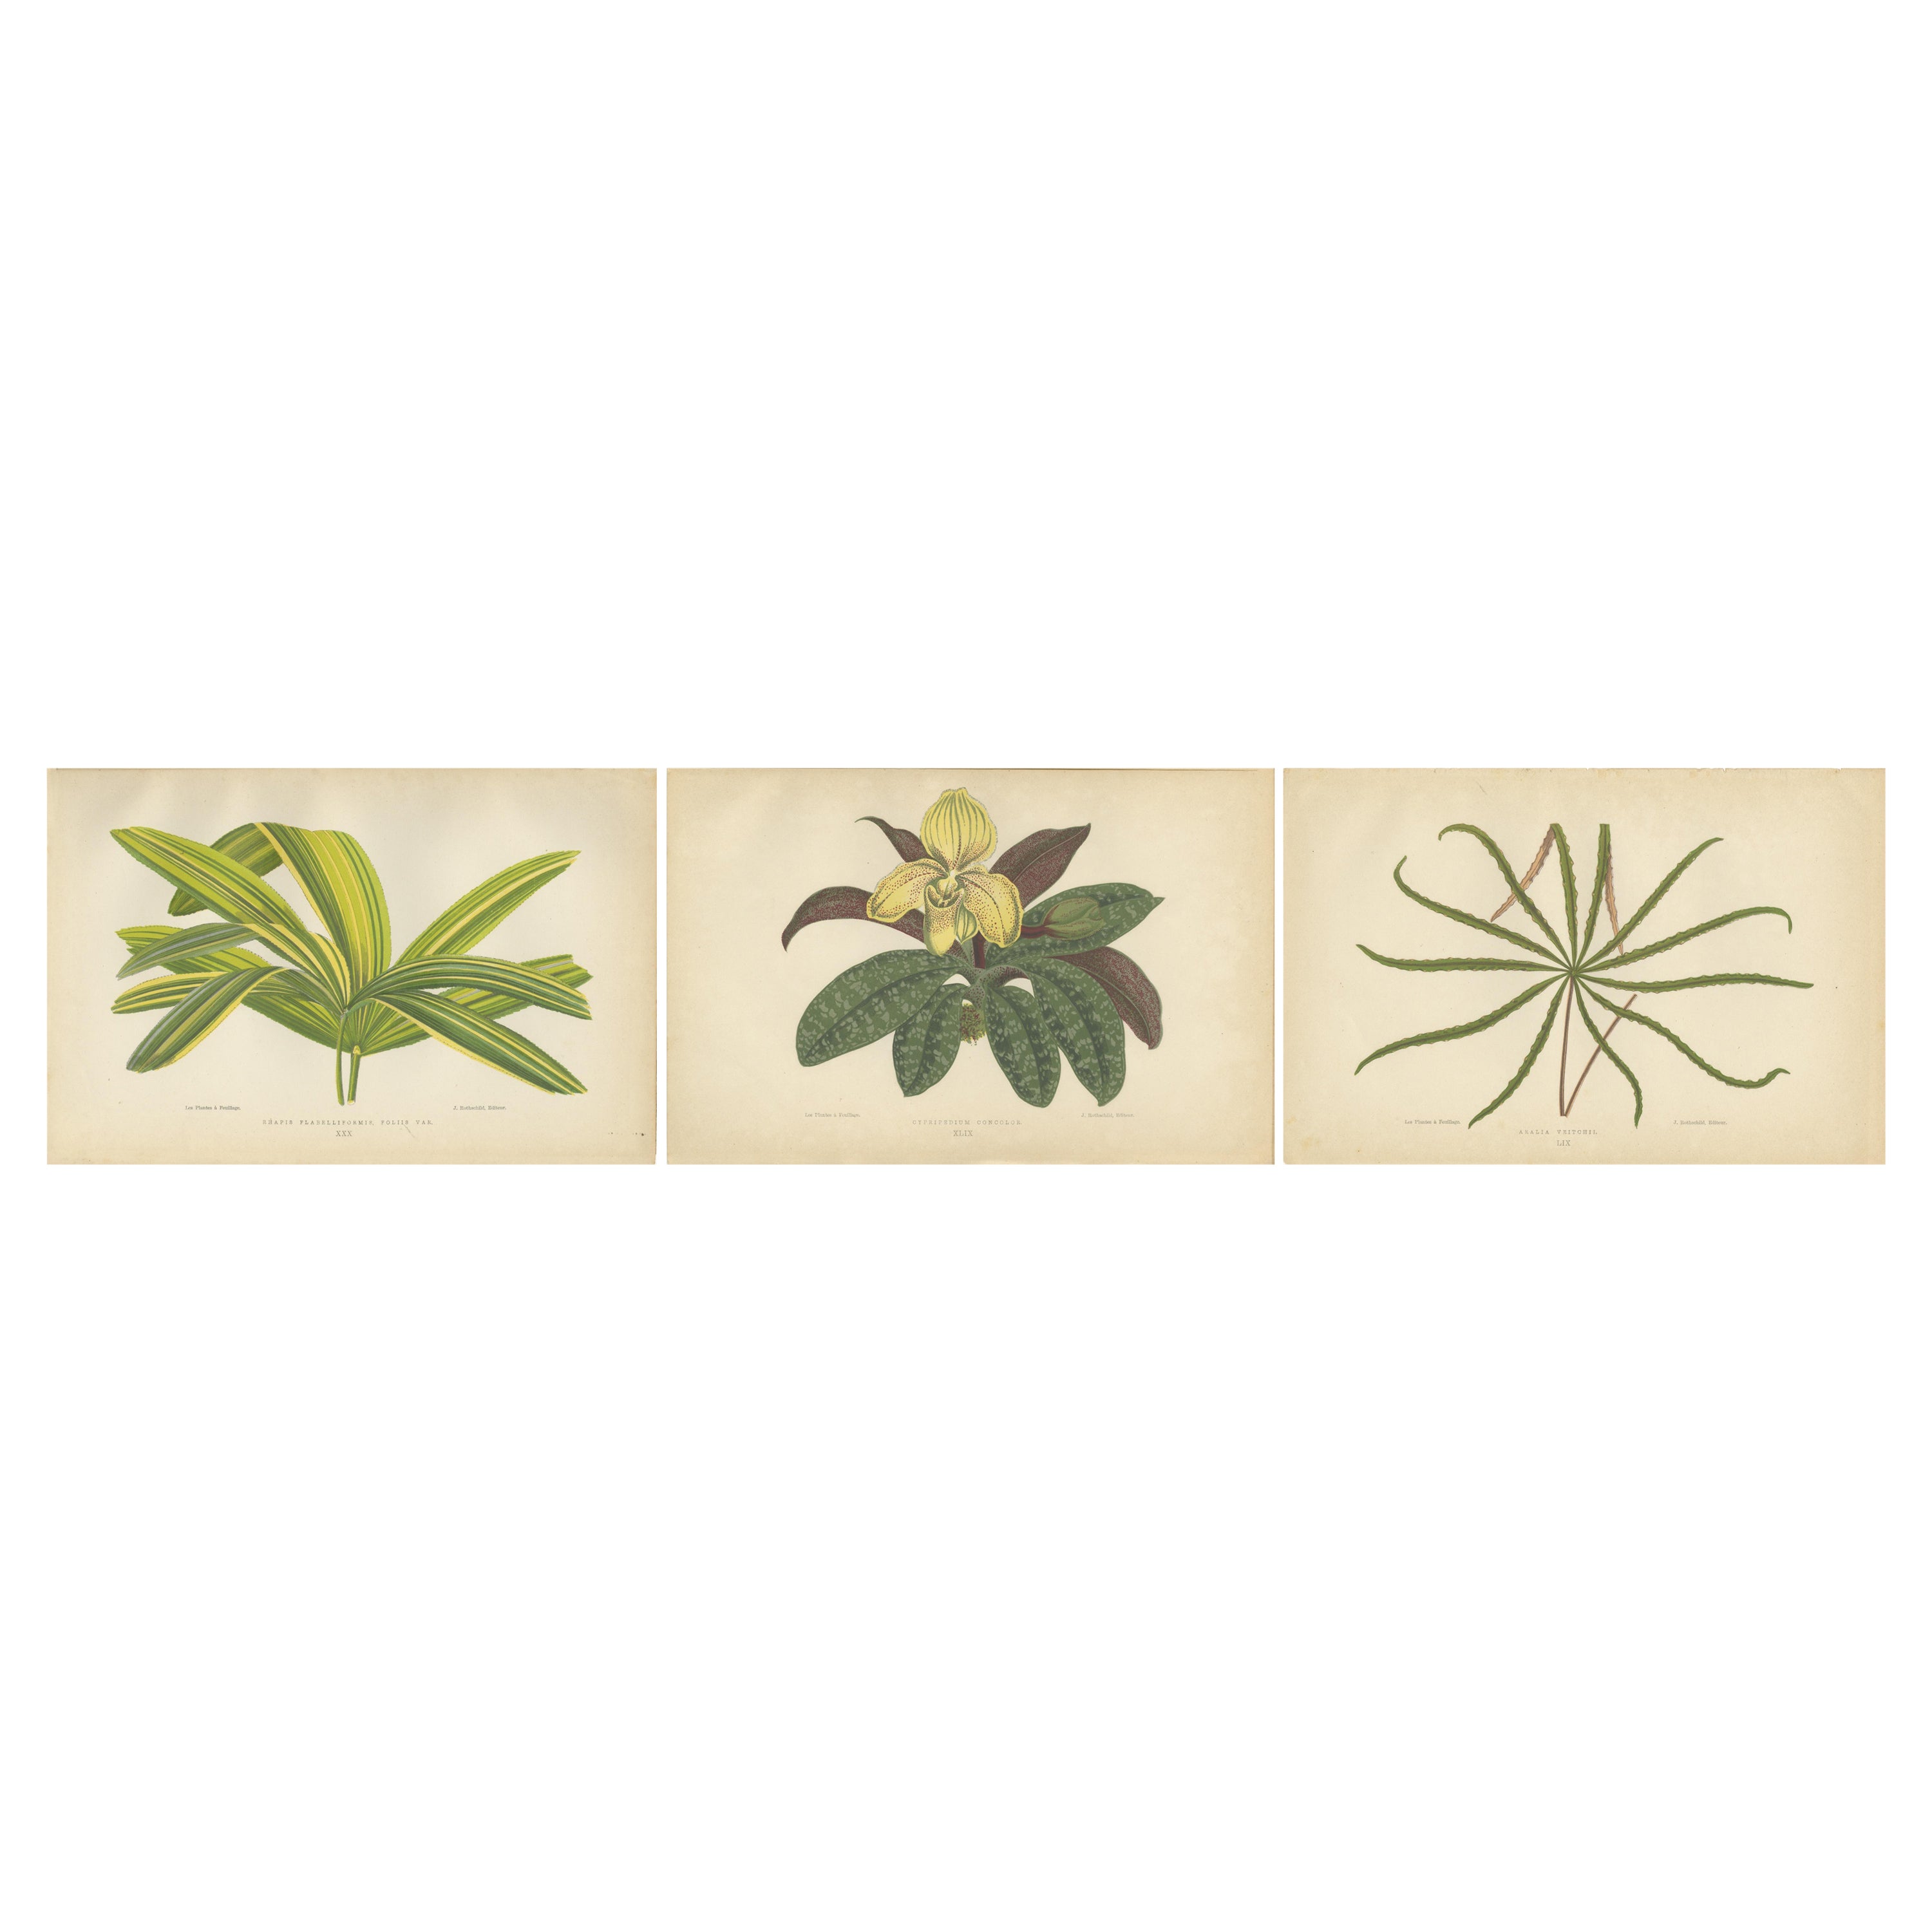 Trio of Elegance: Vintage Botanical Prints, herausgegeben im Jahr 1880